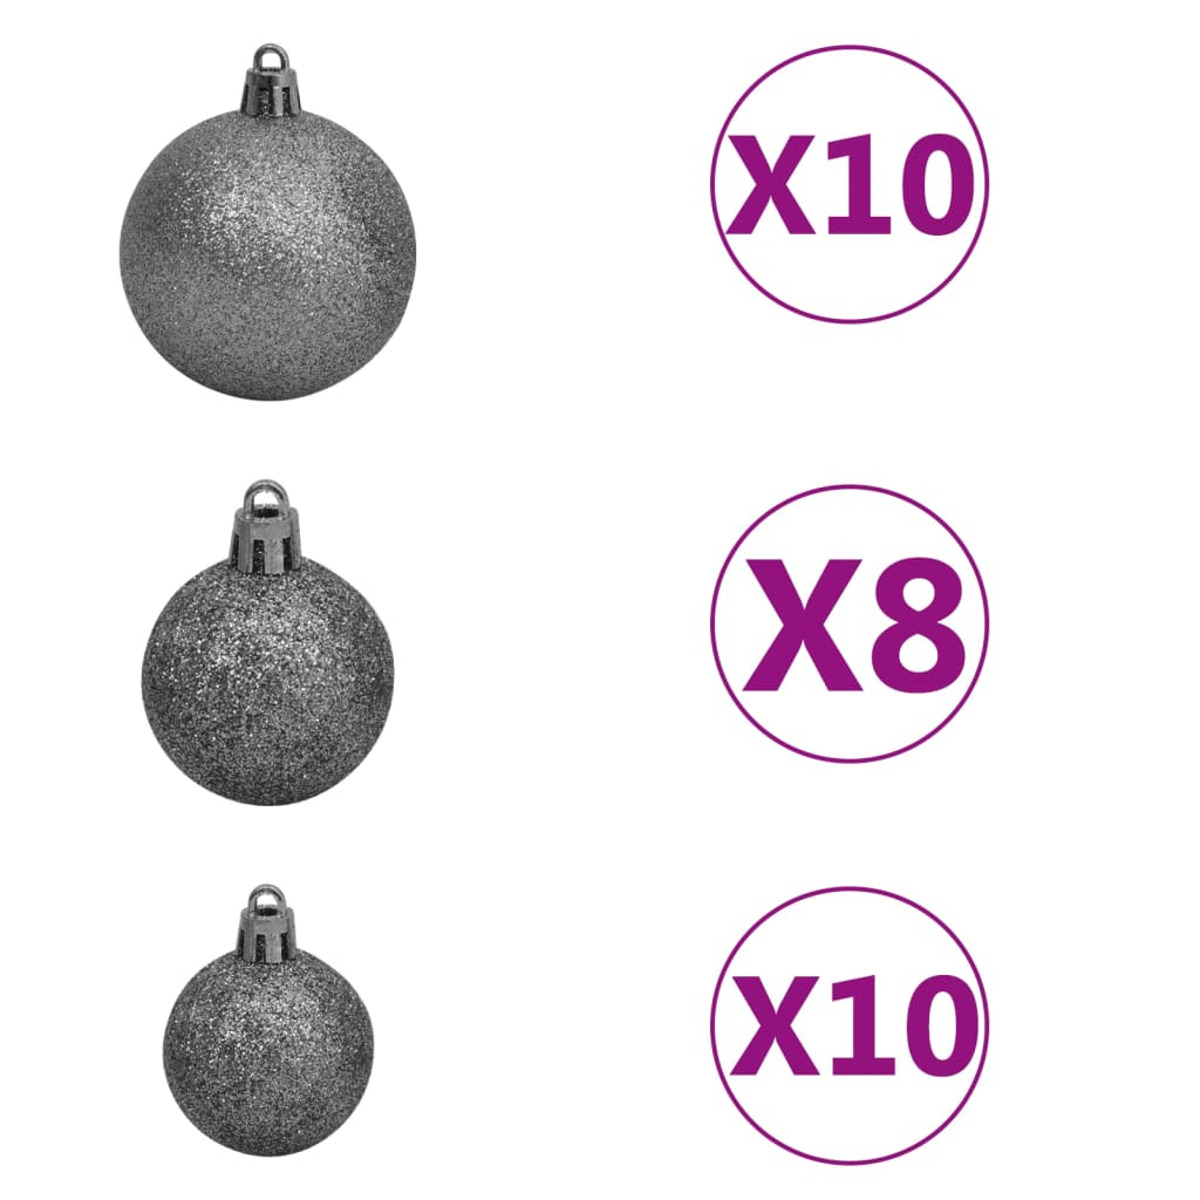 VIDAXL 3210500 Weihnachtsbaum